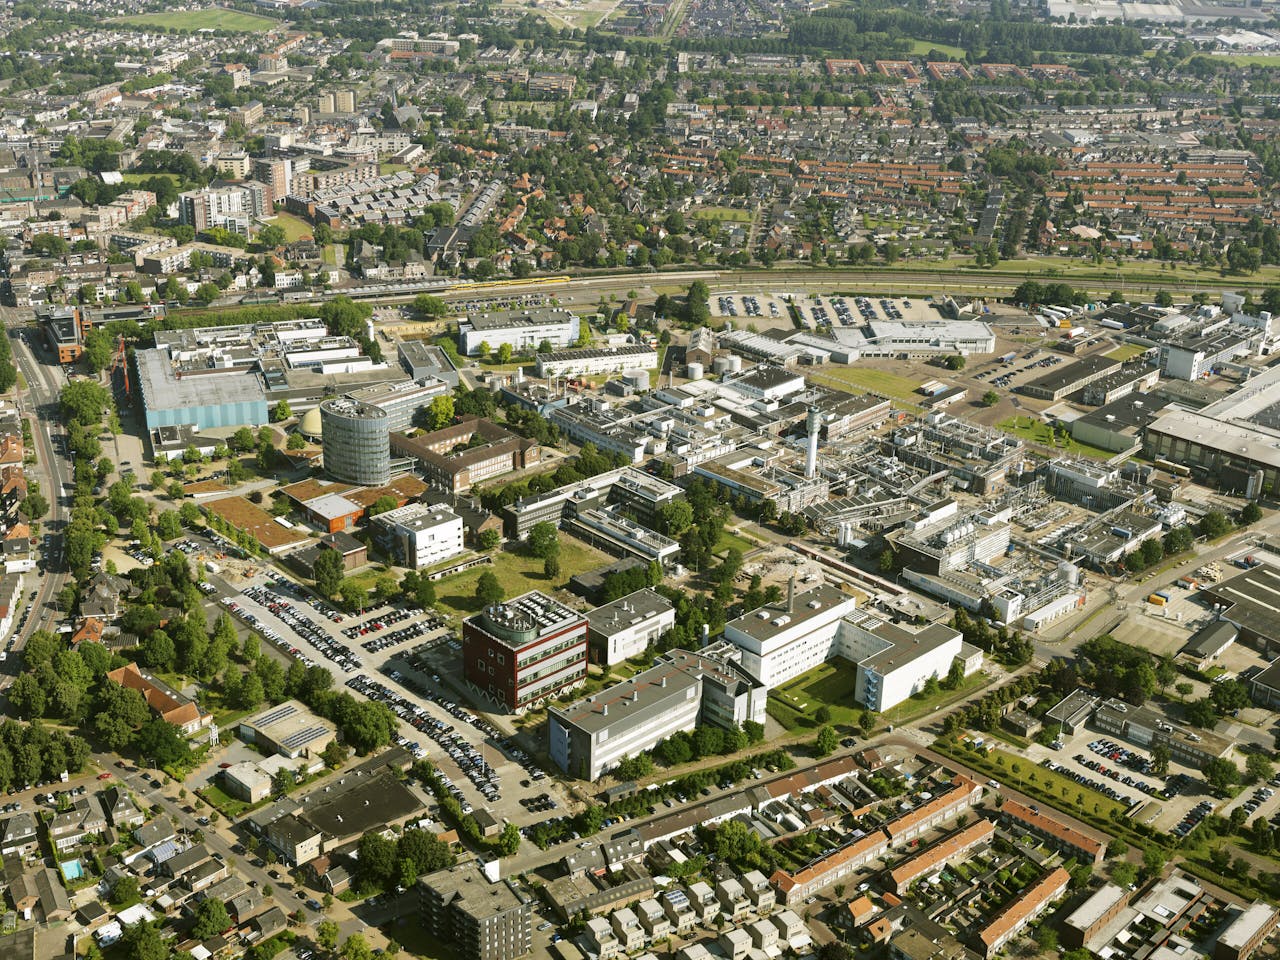 Luchtopname van Oss, waar farmacampus Pivot Park nu 'uit zijn jas groeit'. De intensieve samenwerking tussen bedrijven, overheden en onderwijs maken van Noord-Brabant een innovatieve hotspot.